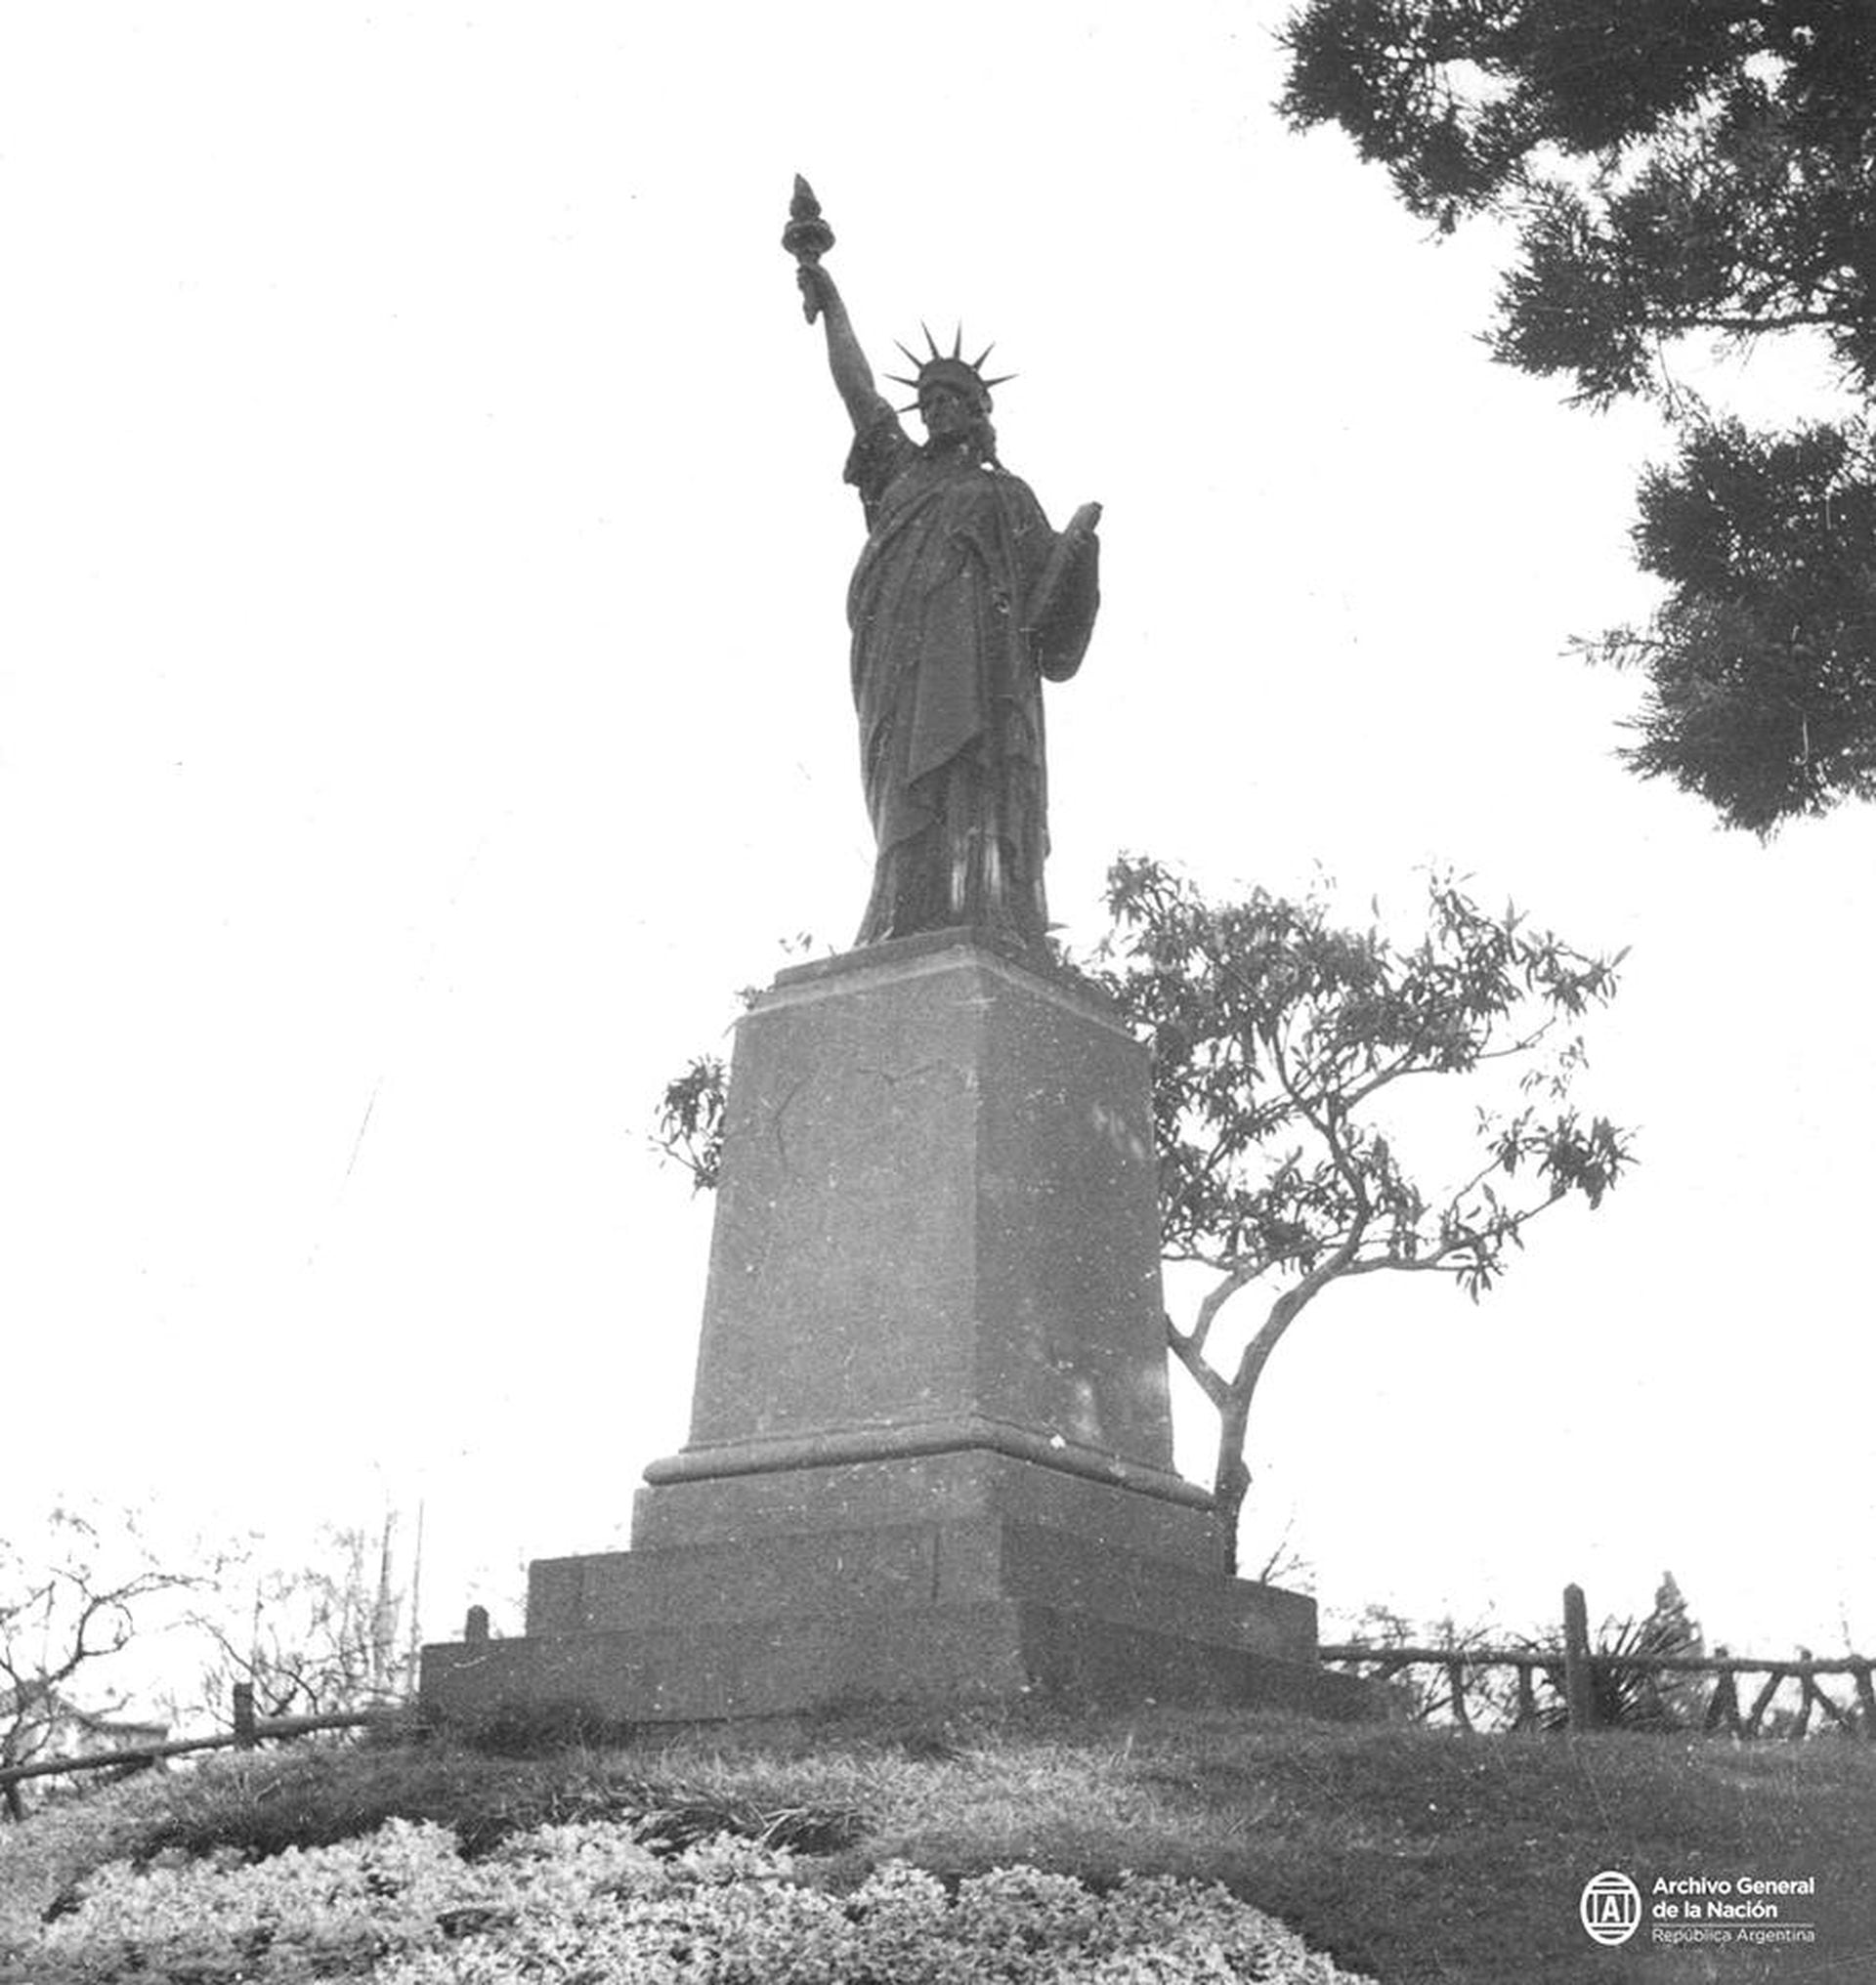 Según Alberto Octavio Córdoba en su libro "El barrio de Belgrano. Hombres y Cosas del Pasado", fue inaugurada en el año 1875, es decir, antes que la Estatua de la Libertad de Manhattan